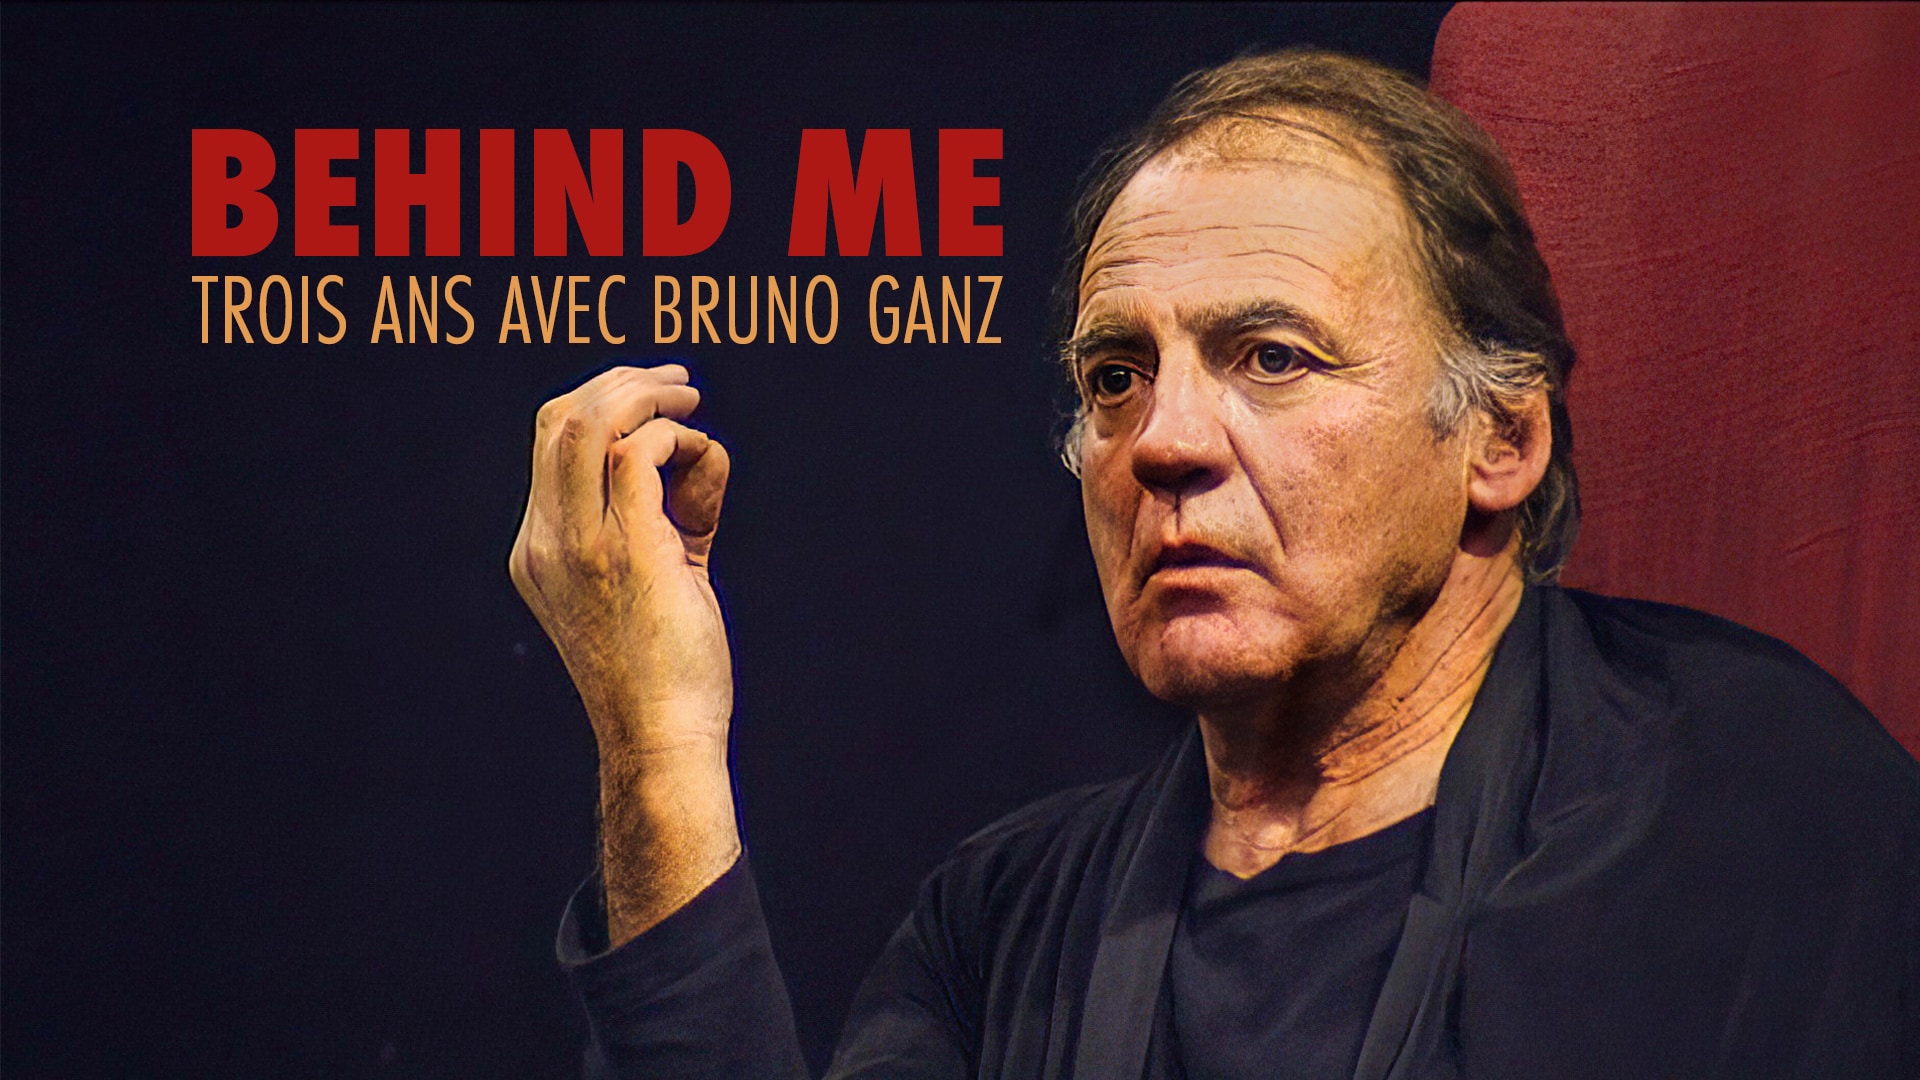 Behind Me - Trois ans avec Bruno Ganz